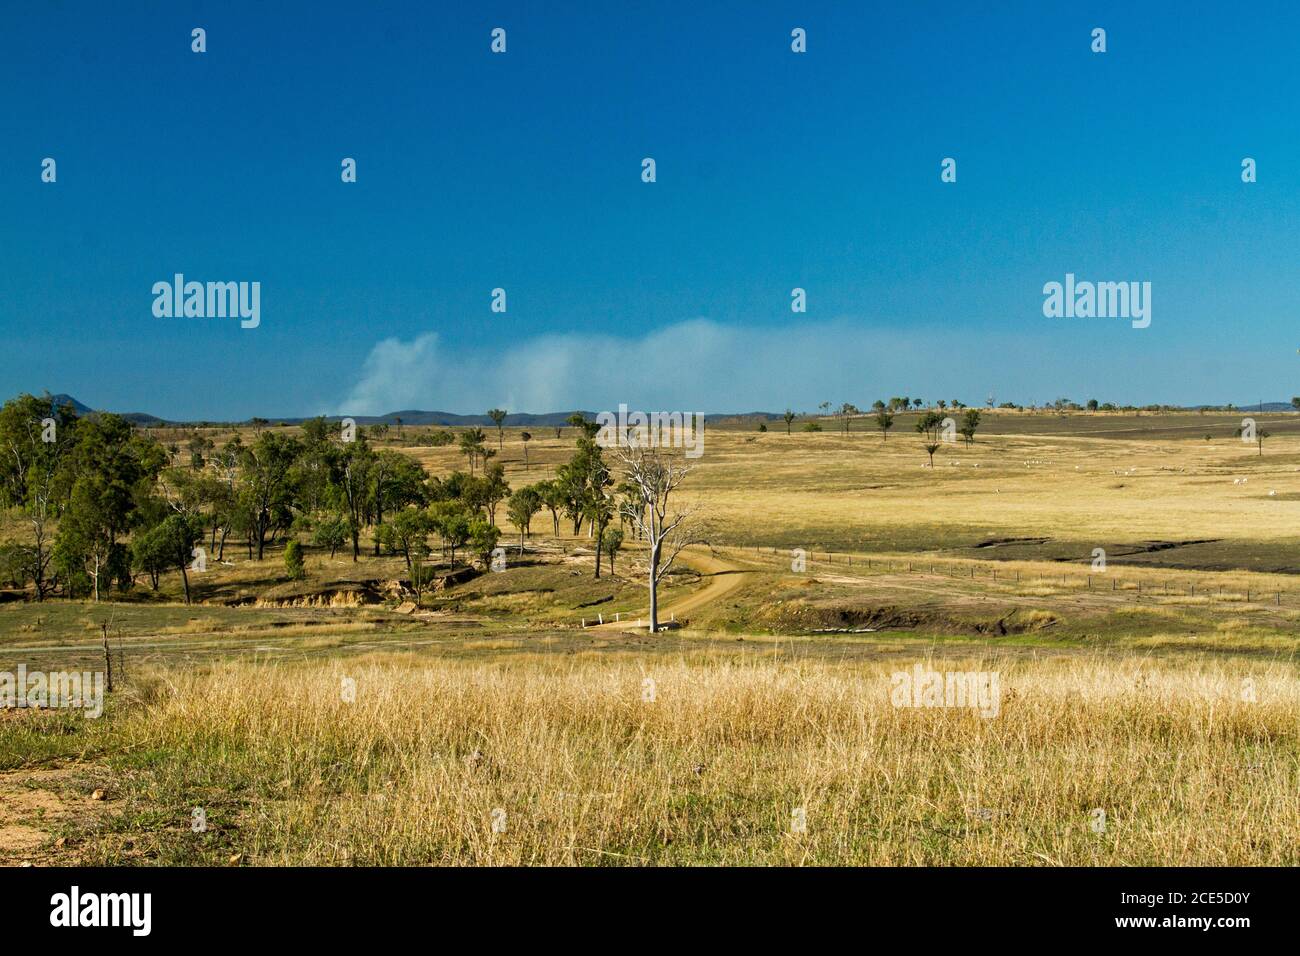 Landschaft von goldenem Grasland auf sanften Hügeln fast gerodet Bäume und mit erodierten Rinne im Vordergrund unter blauem Himmel In Australien Stockfoto